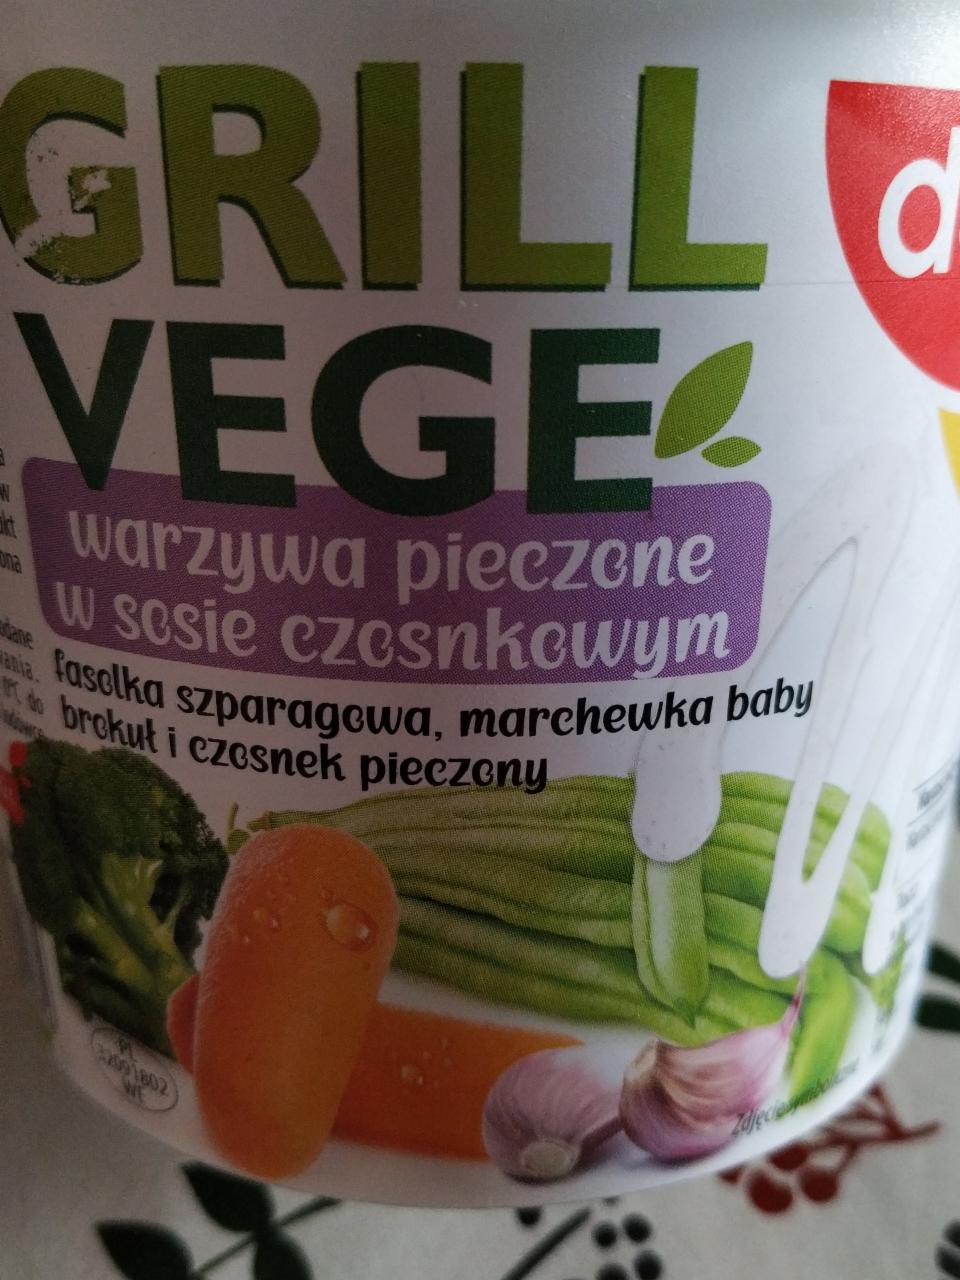 Fotografie - Grill Vege warzywa pieczone w sosie czosnkowym Dega